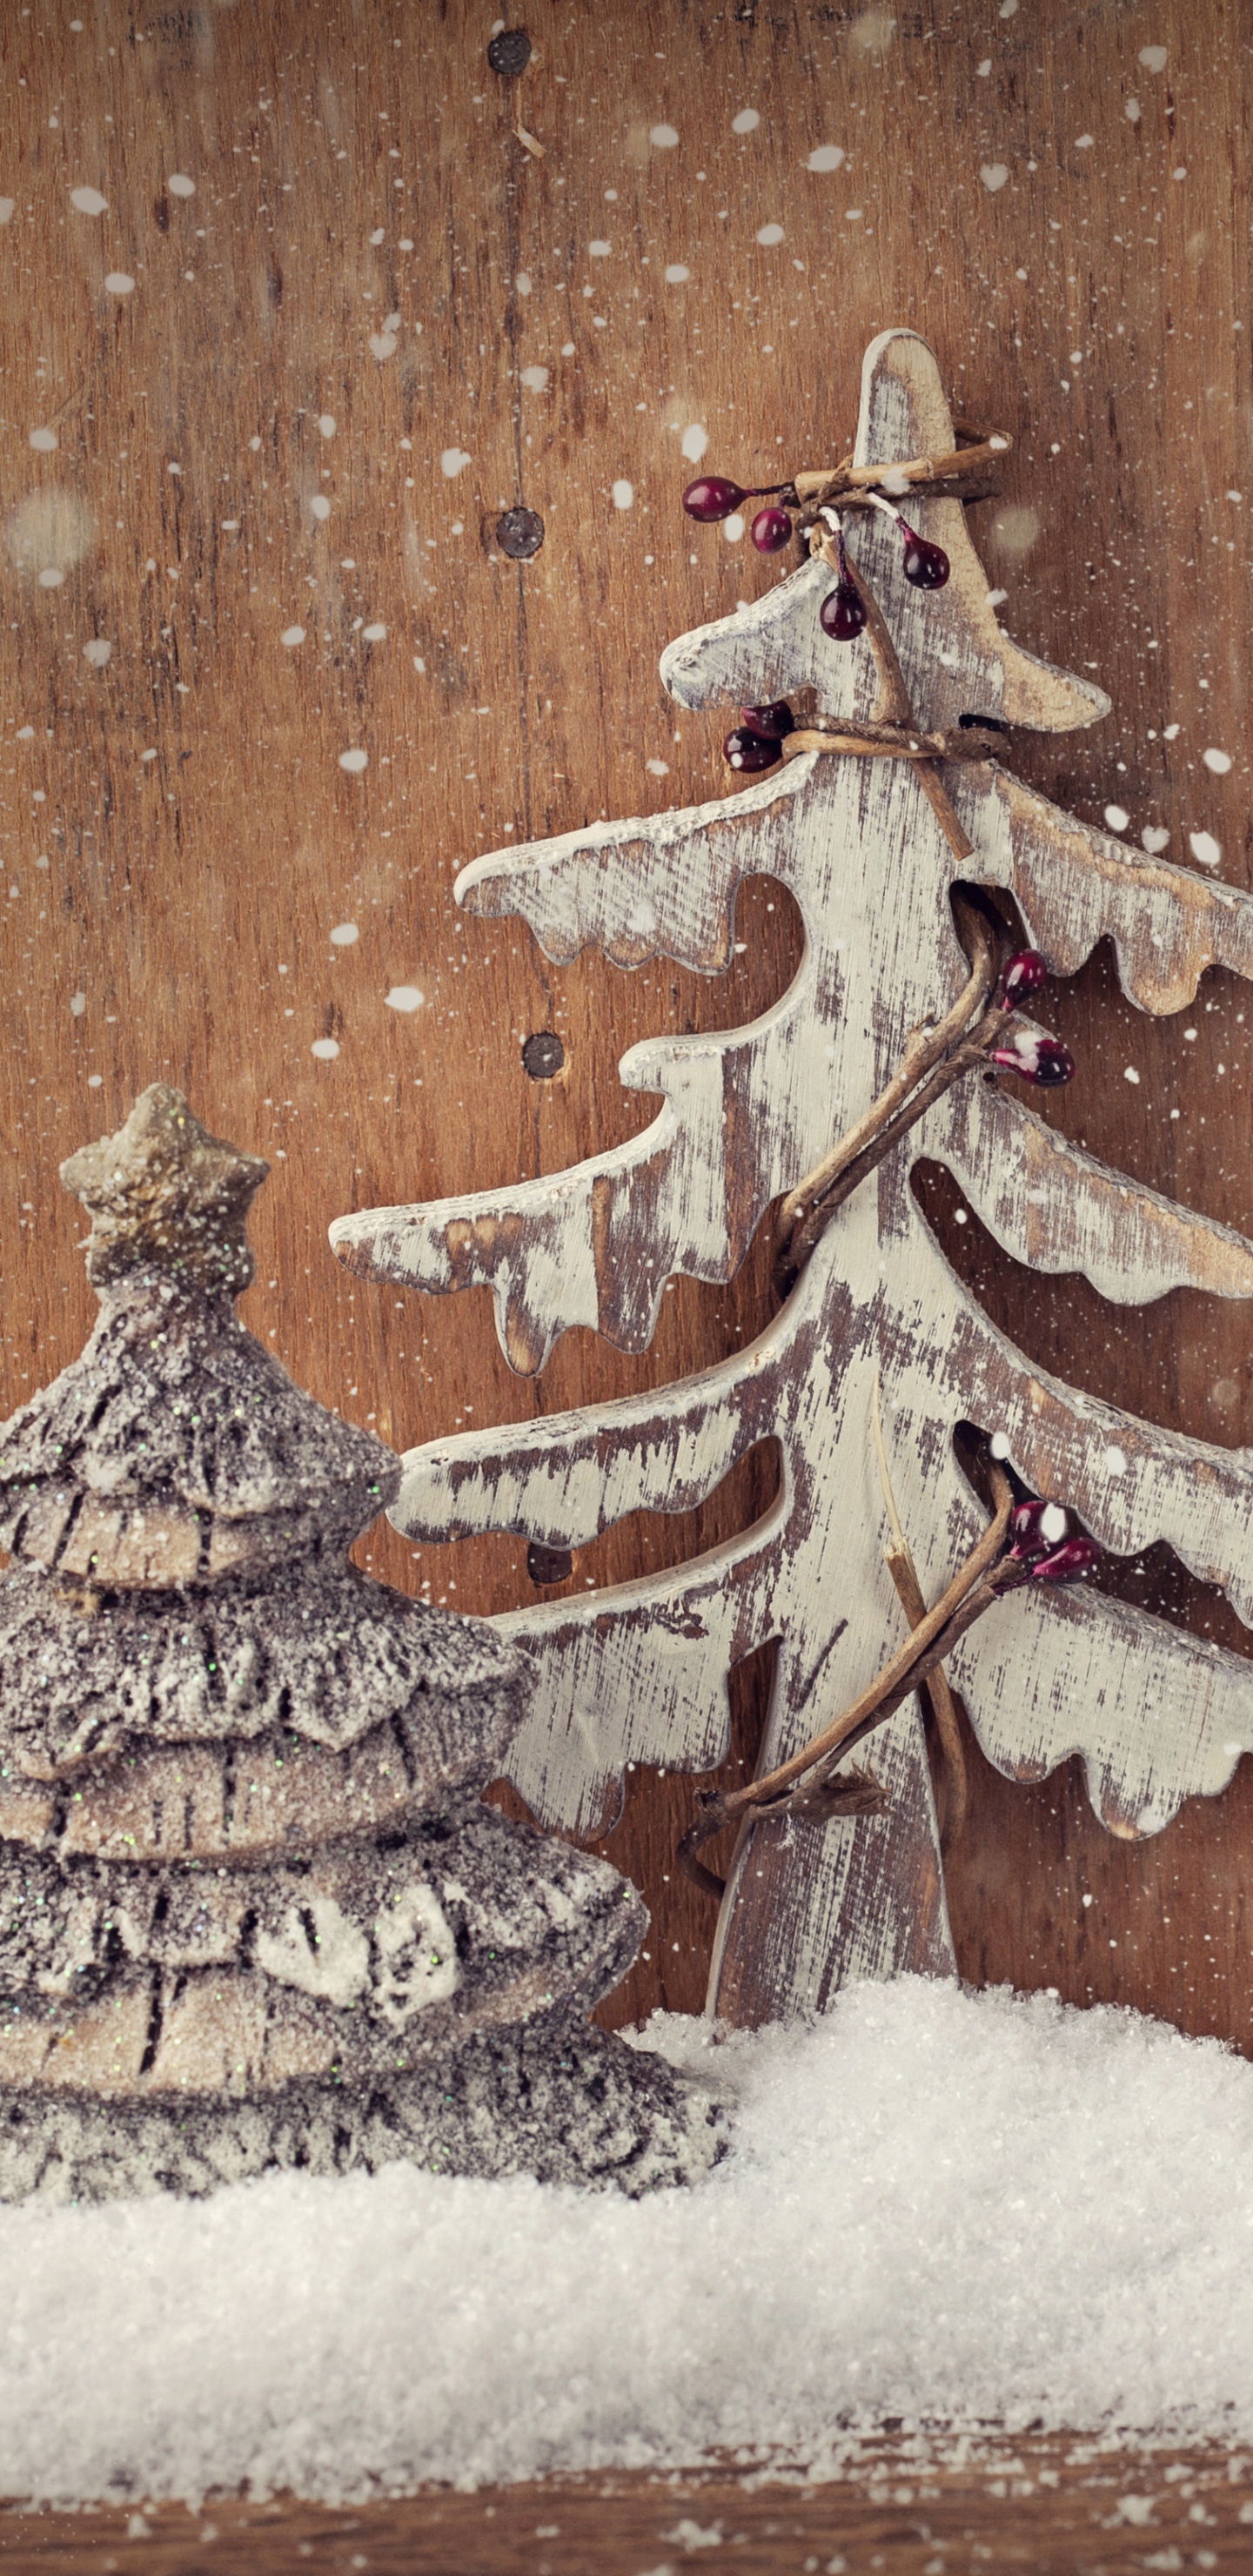 Weihnachten, Weihnachtsbaum, Weihnachtsdekoration, Baum, Winter. Wallpaper in 1440x2960 Resolution